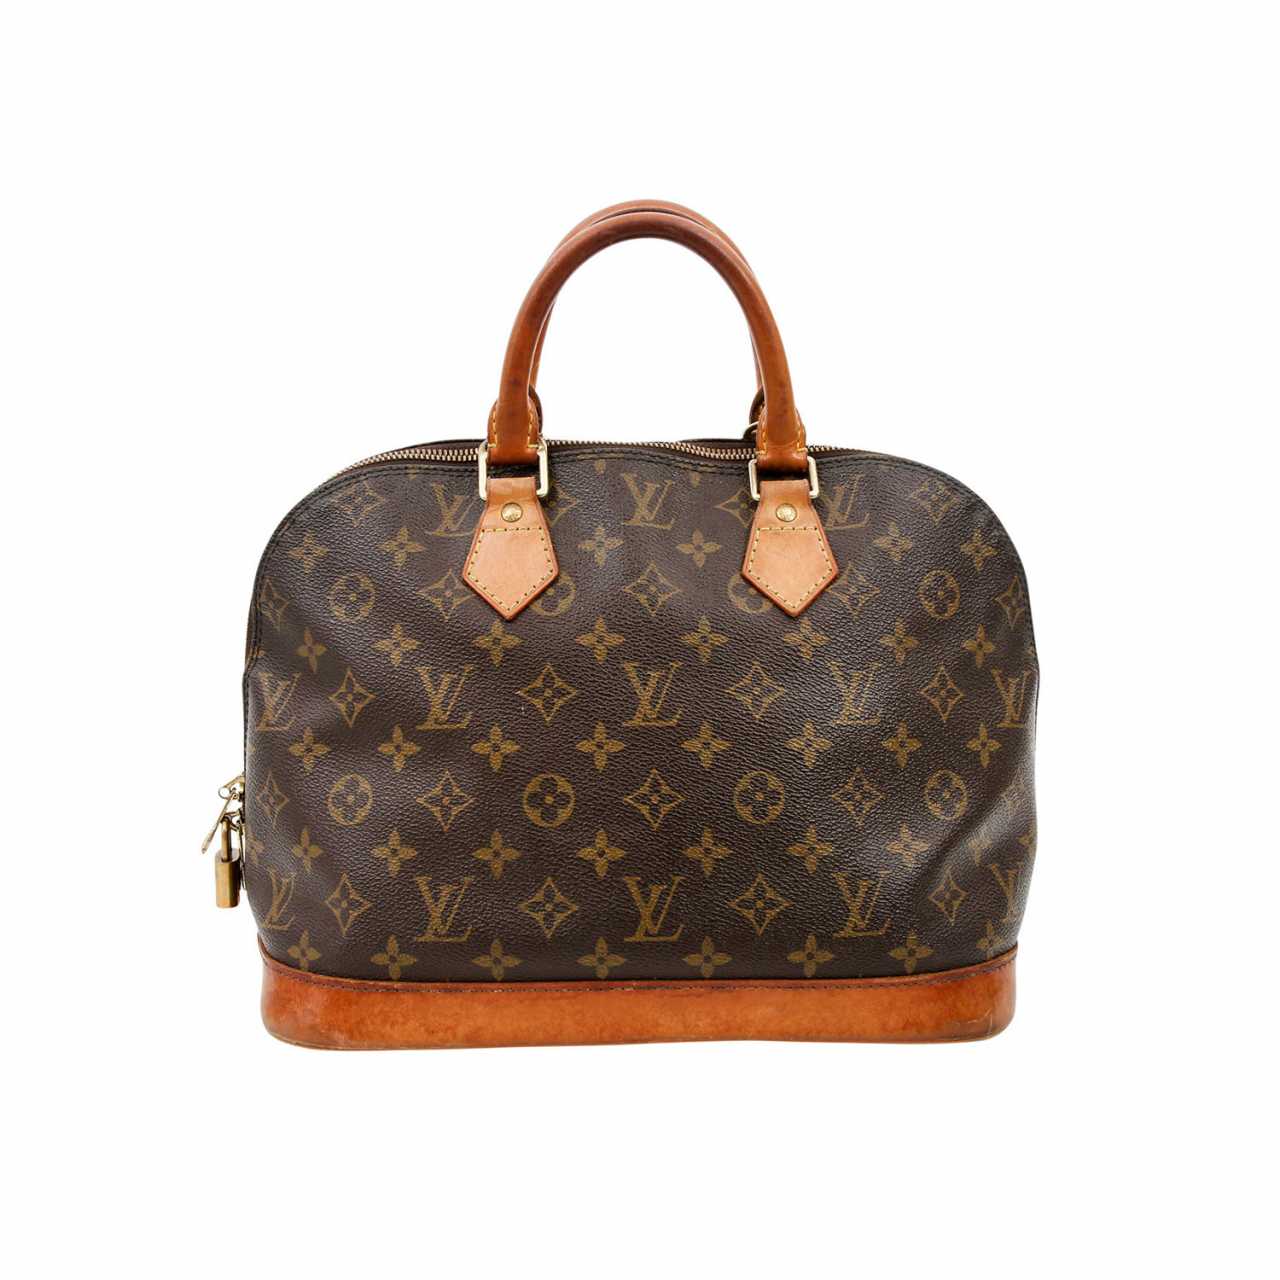 Lv Bags Louis Vuitton Handbag Prices | semashow.com